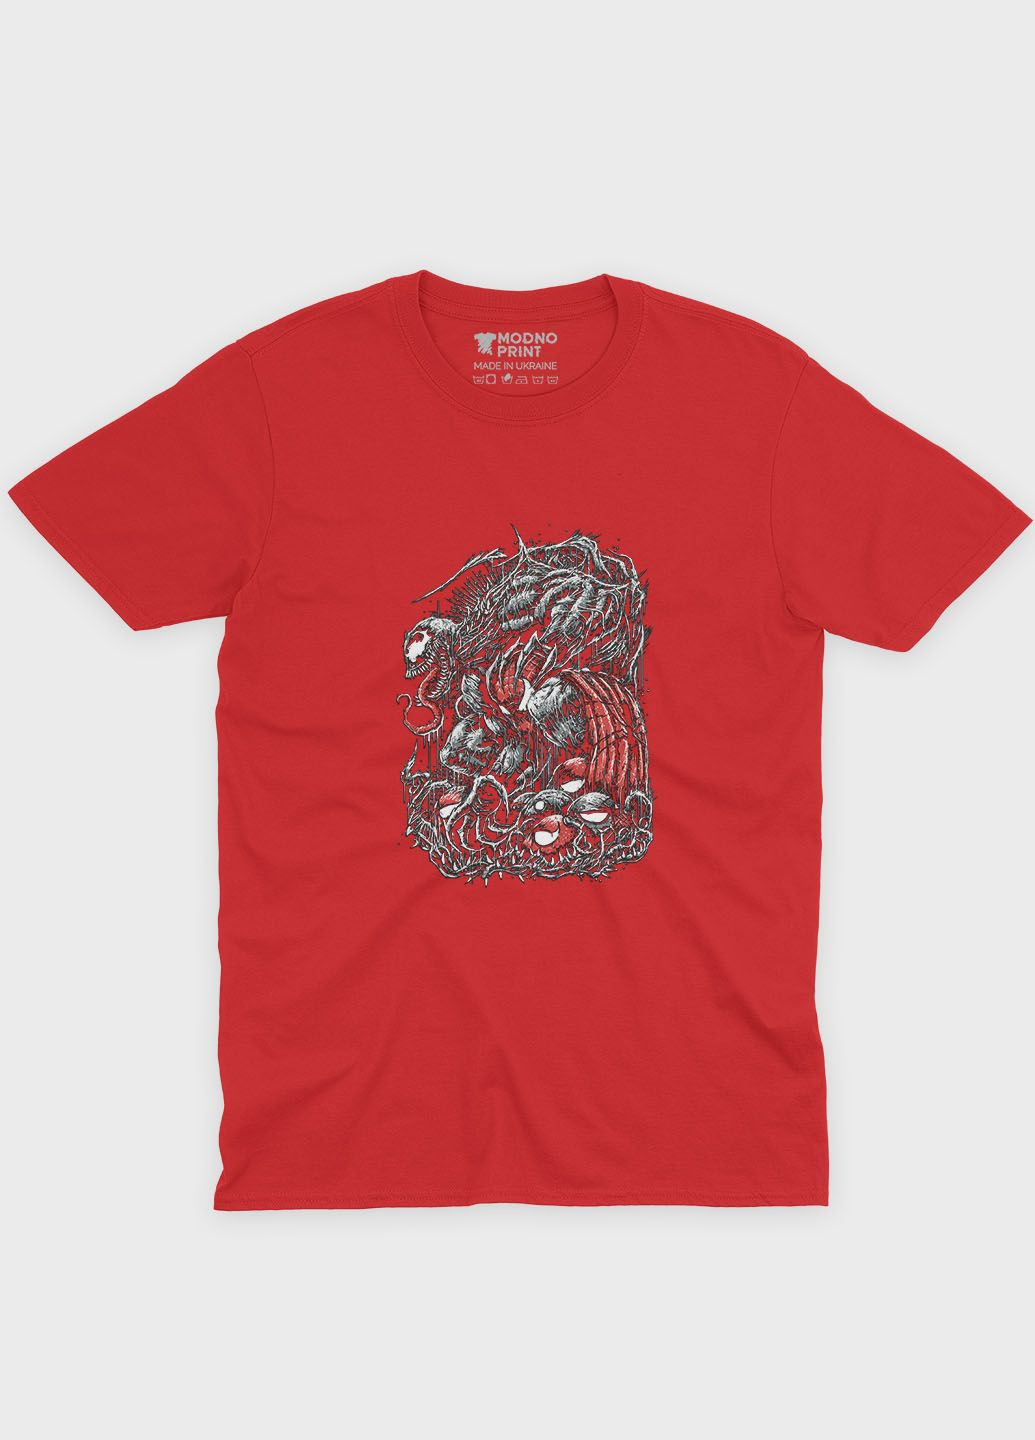 Червона демісезонна футболка для хлопчика з принтом суперзлодія - веном (ts001-1-sre-006-013-029-b) Modno